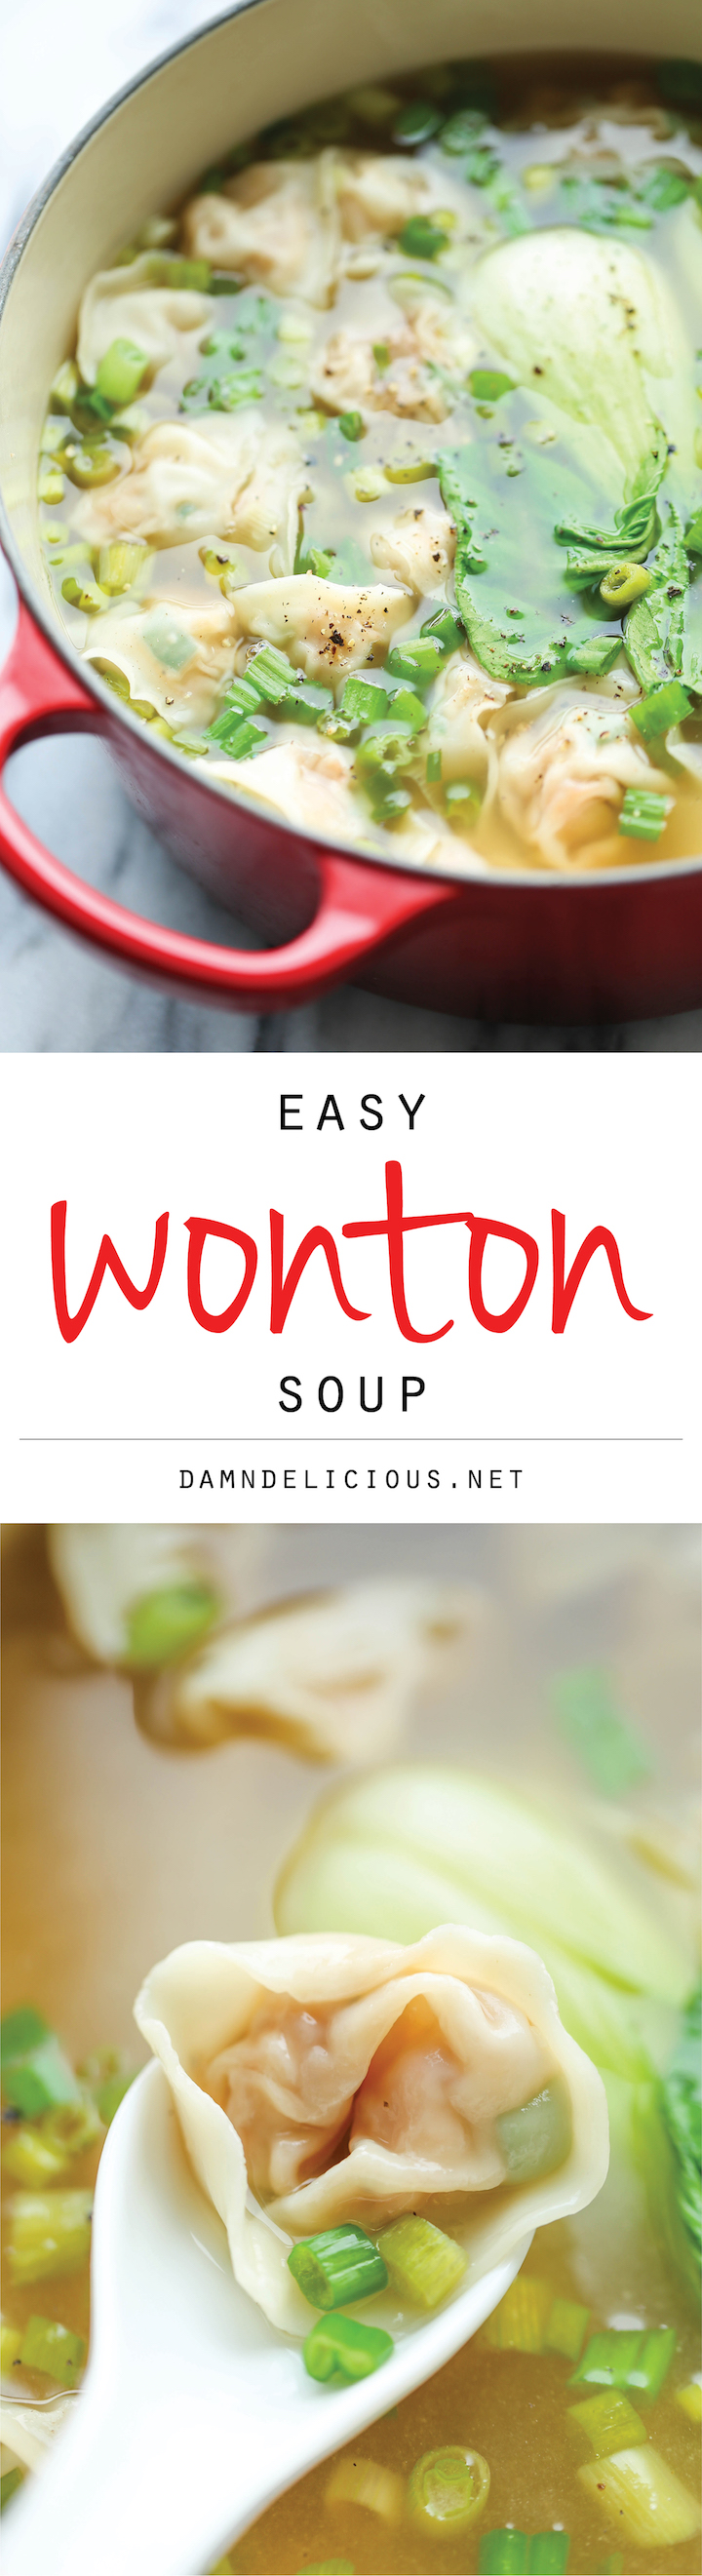 Wonton Soup - Damn Delicious